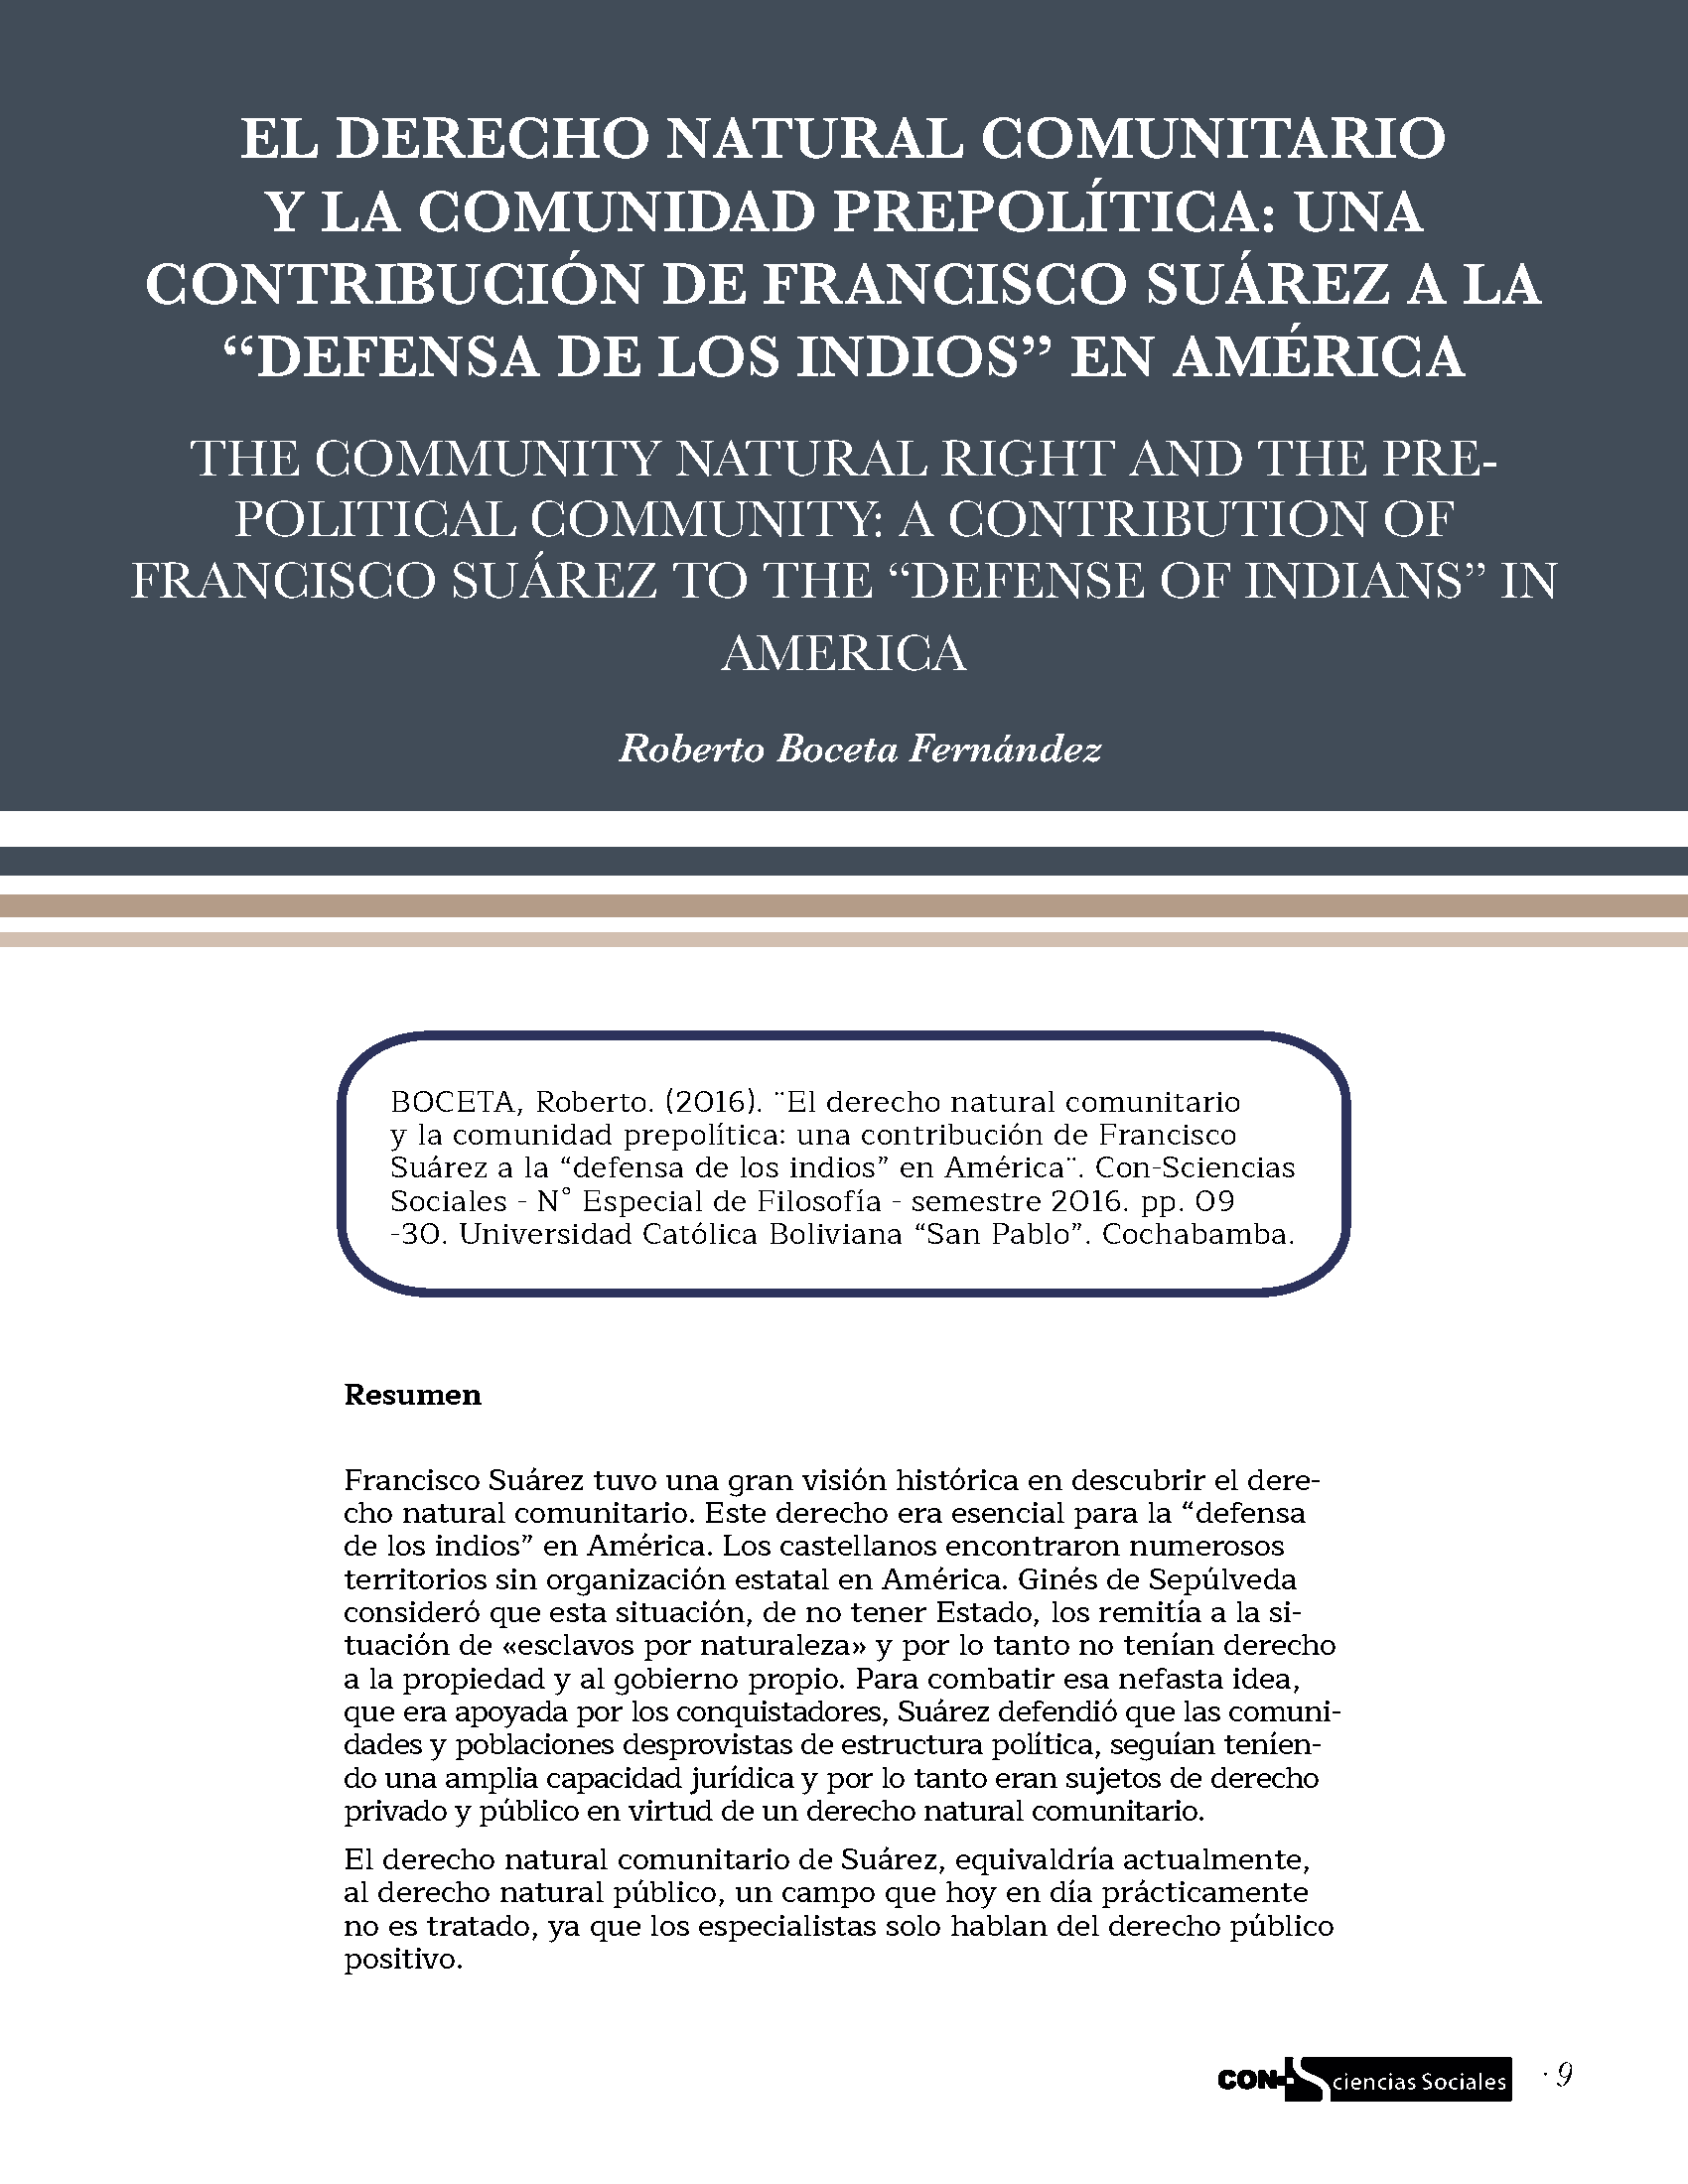 El derecho natural comunitario y la comunidad prepolítica: una contribución de Francisco Suárez a la “defensa de los indios” en América